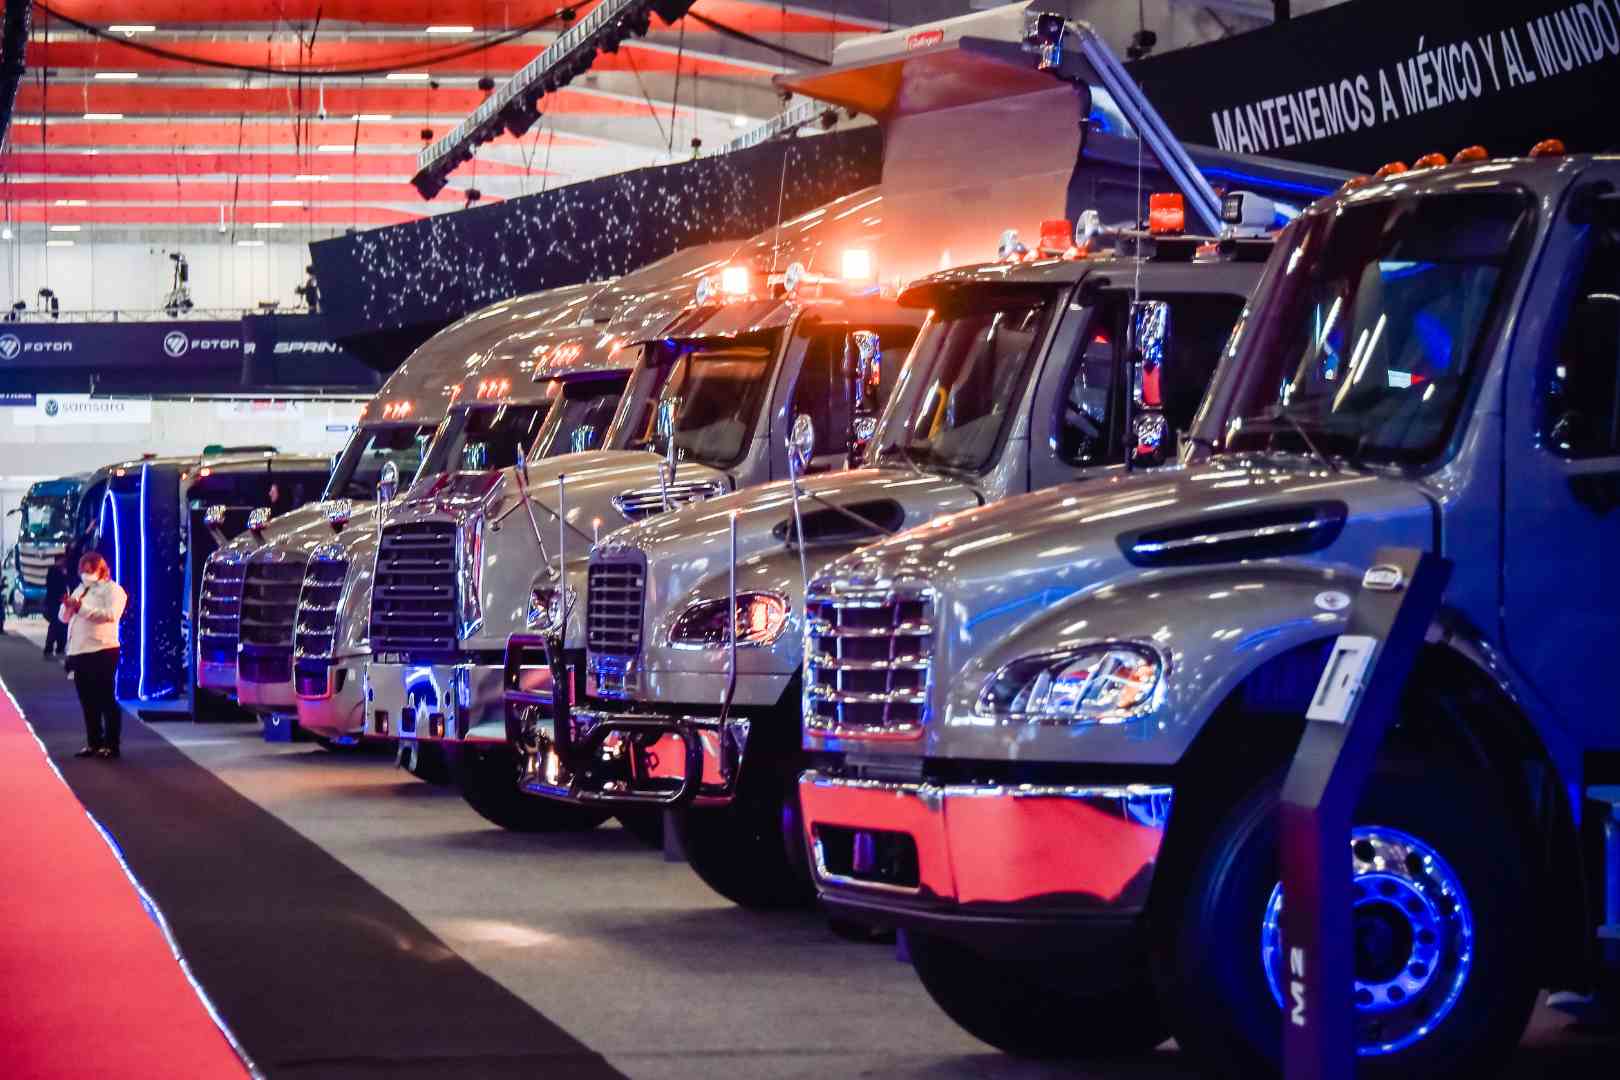 Daimler Truck México